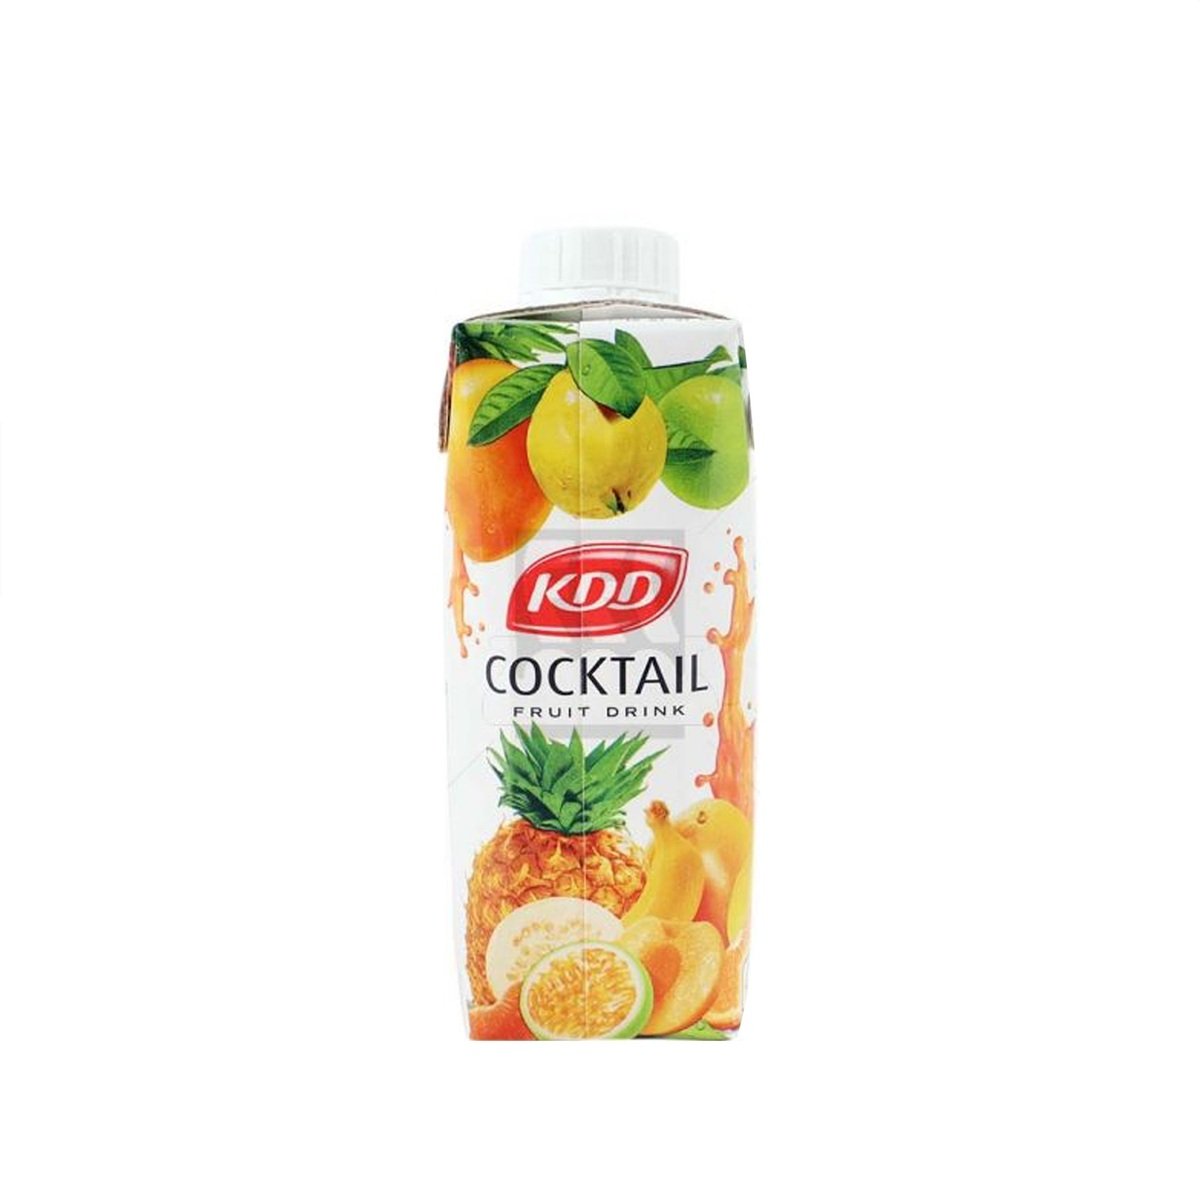 KDD Cocktail Fruit Drink 250ml